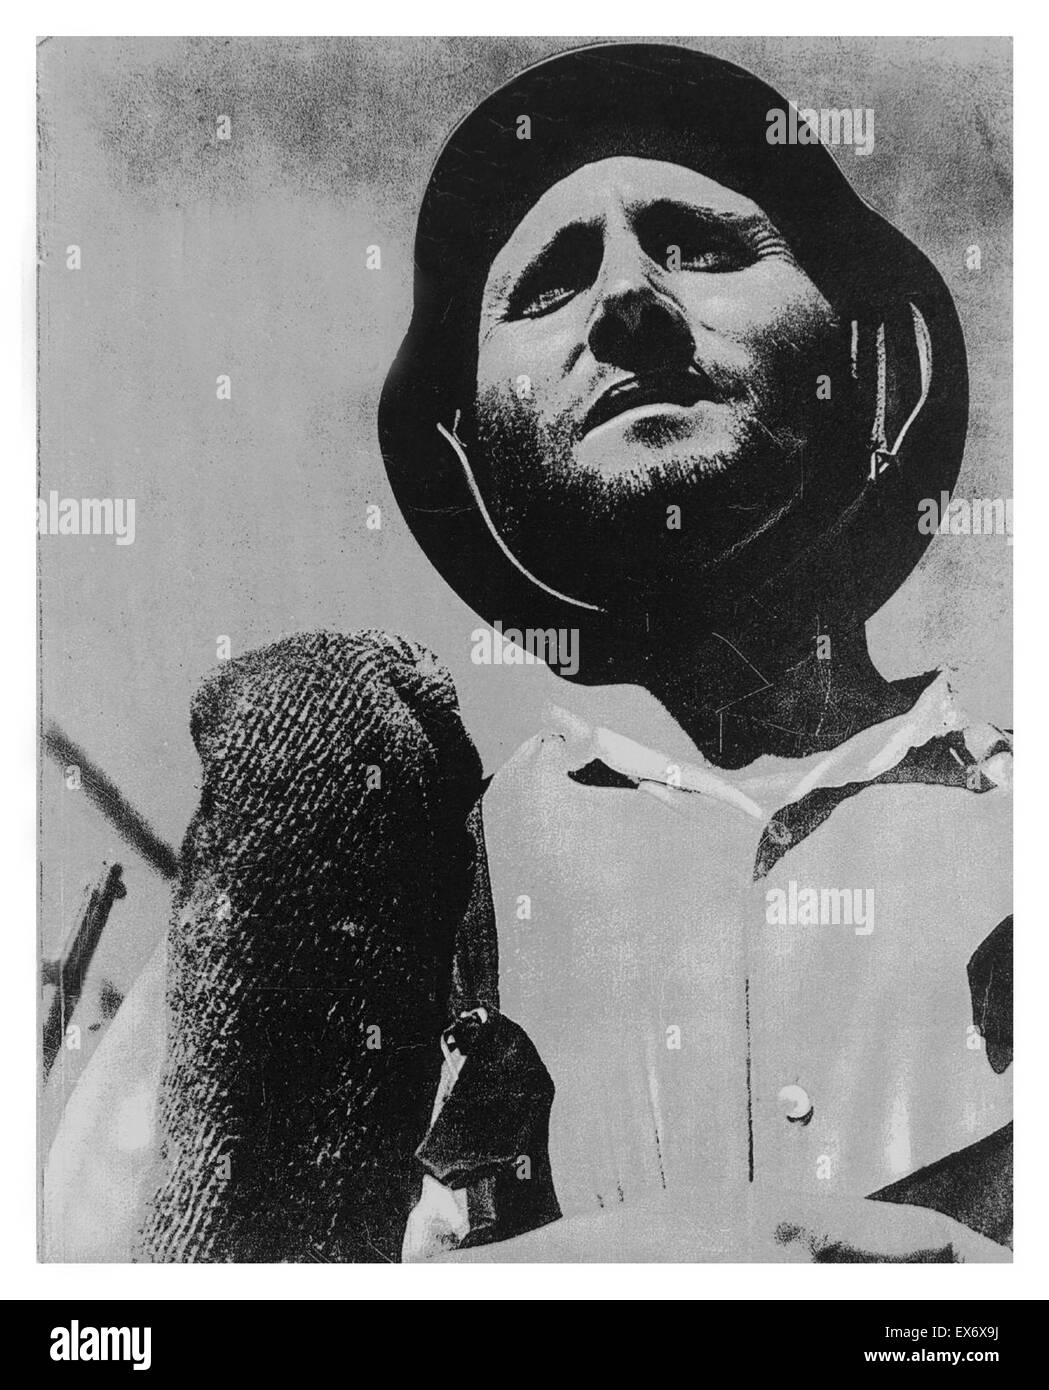 Guerra Civil española: el soldado republicano, 1937 Foto de stock